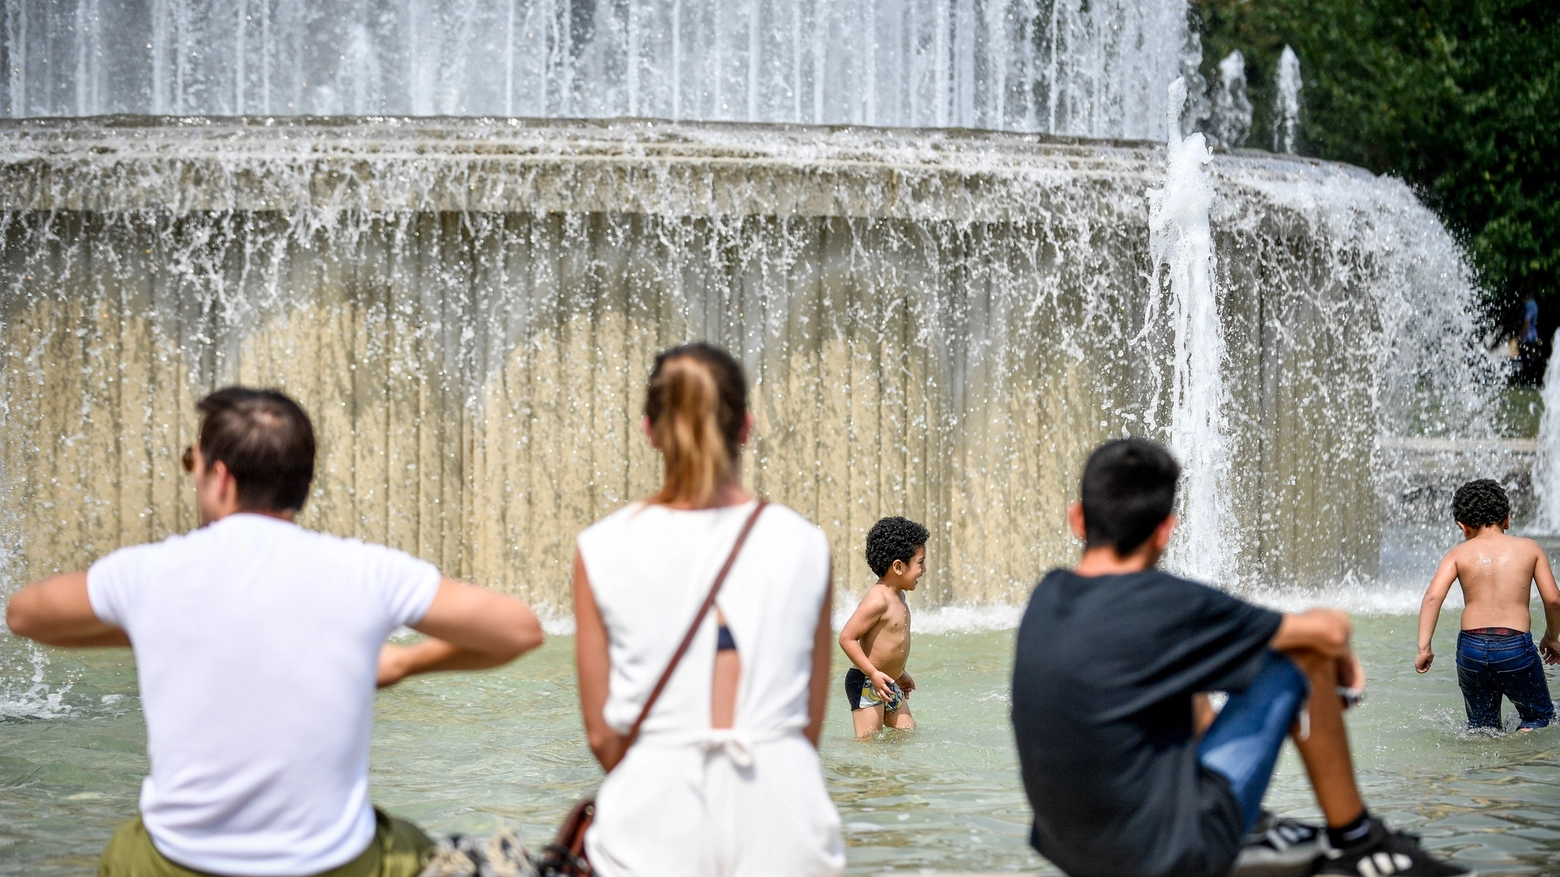 Turisti cercano refrigerio nelle fontane